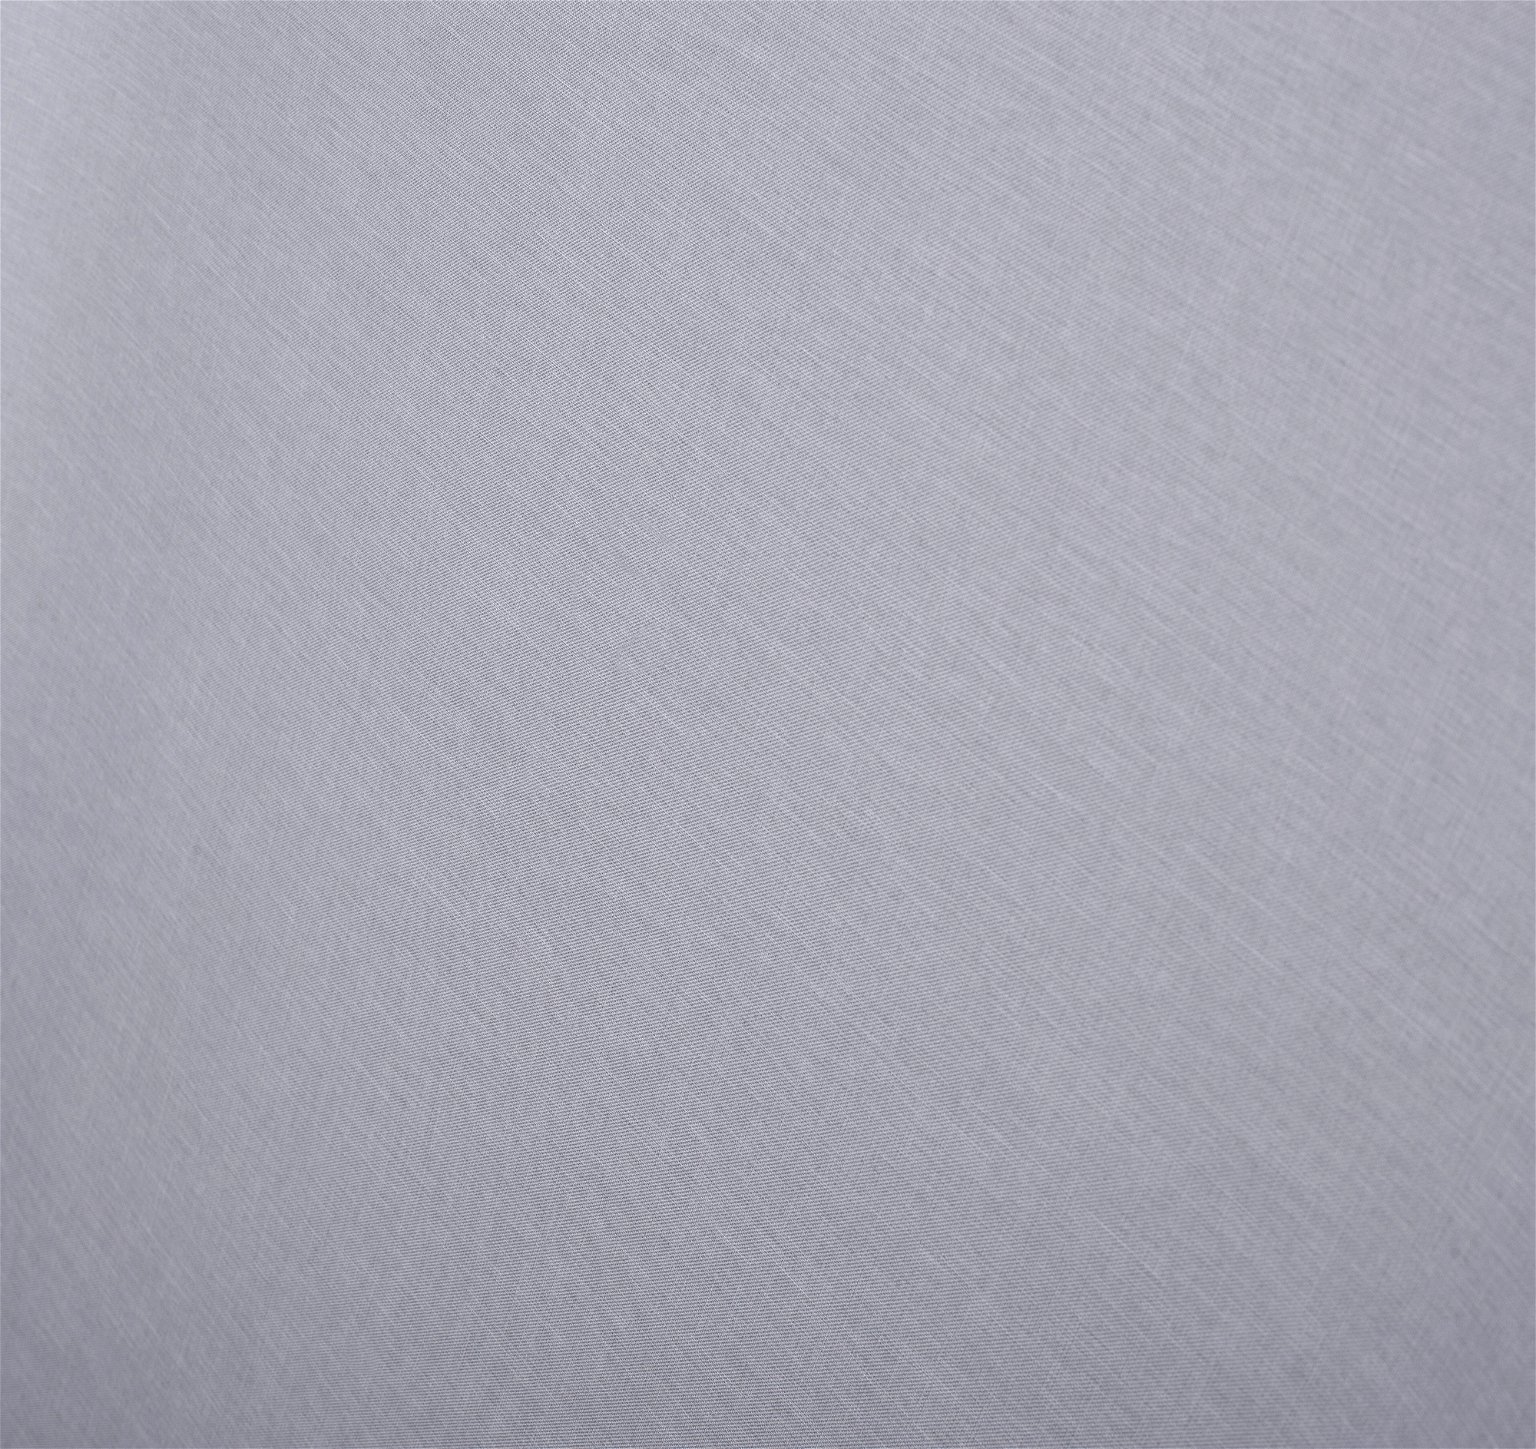 Klasikinė ritininė užuolaida MILAN, šv. pilkos sp., 100 x 170 cm, 100 % poliesteris - 4